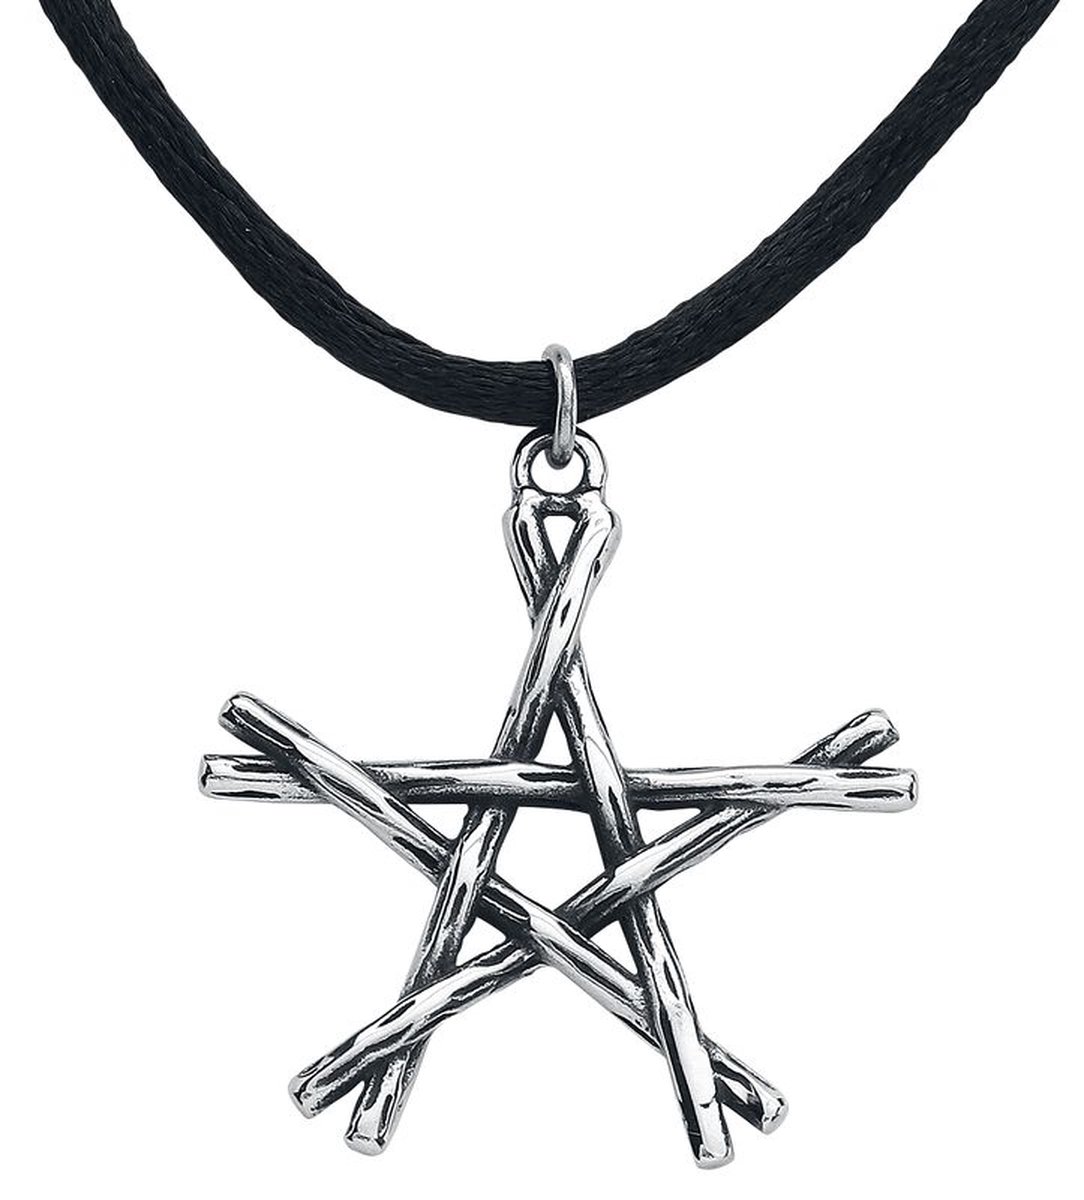 Hanger - Pentagram - Stainless steel